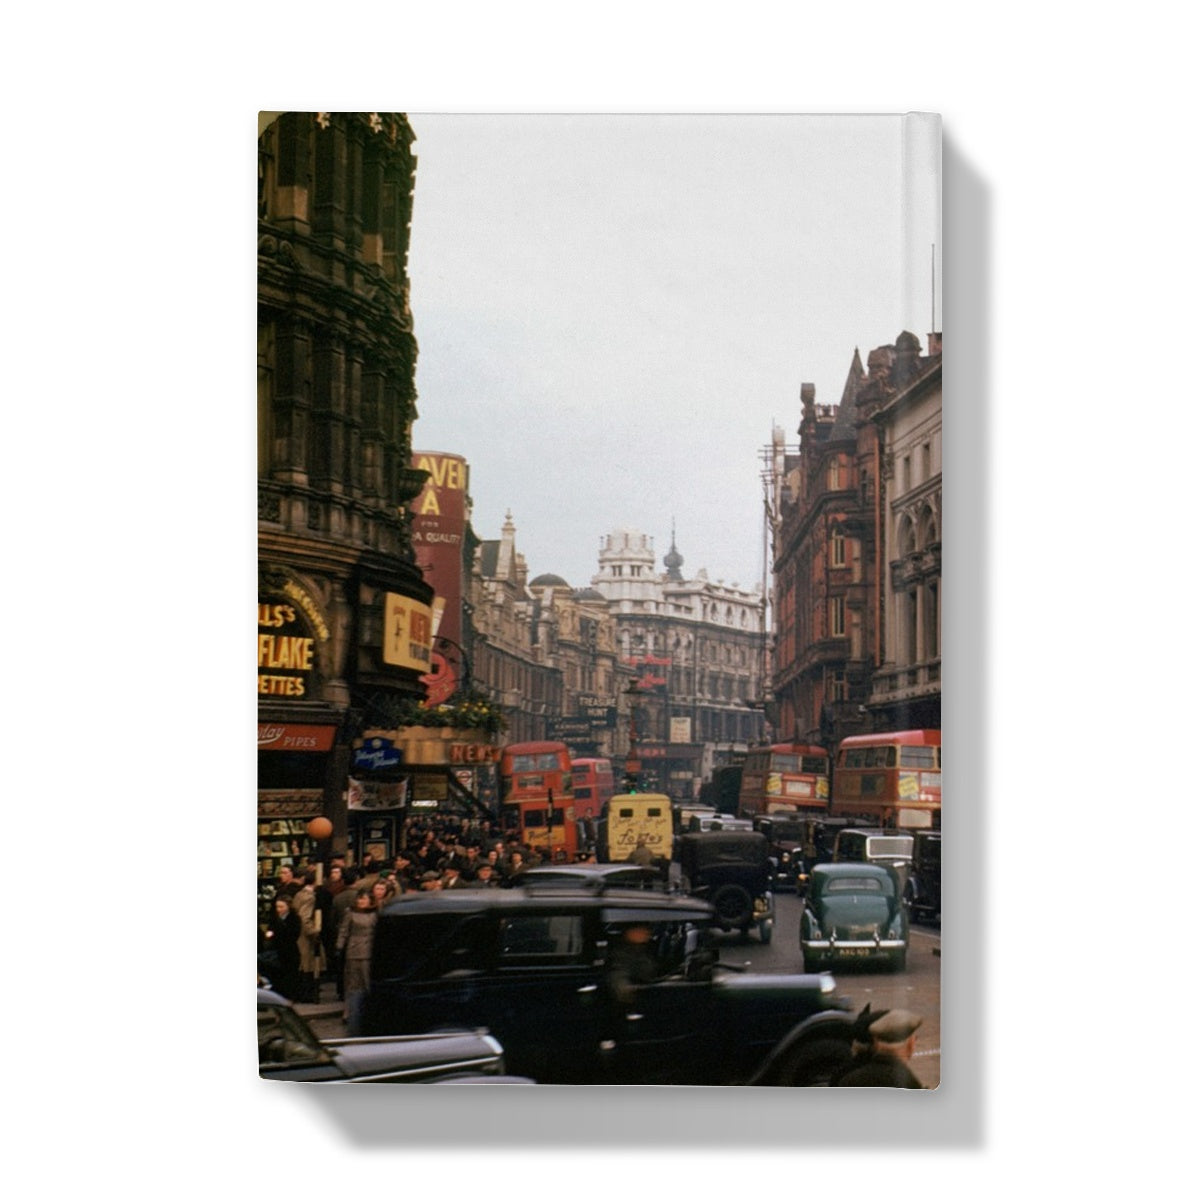 Piccadilly regardant Shaftesbury Avenue, Londres par Chalmers Butterfield, 1949 - Journal relié